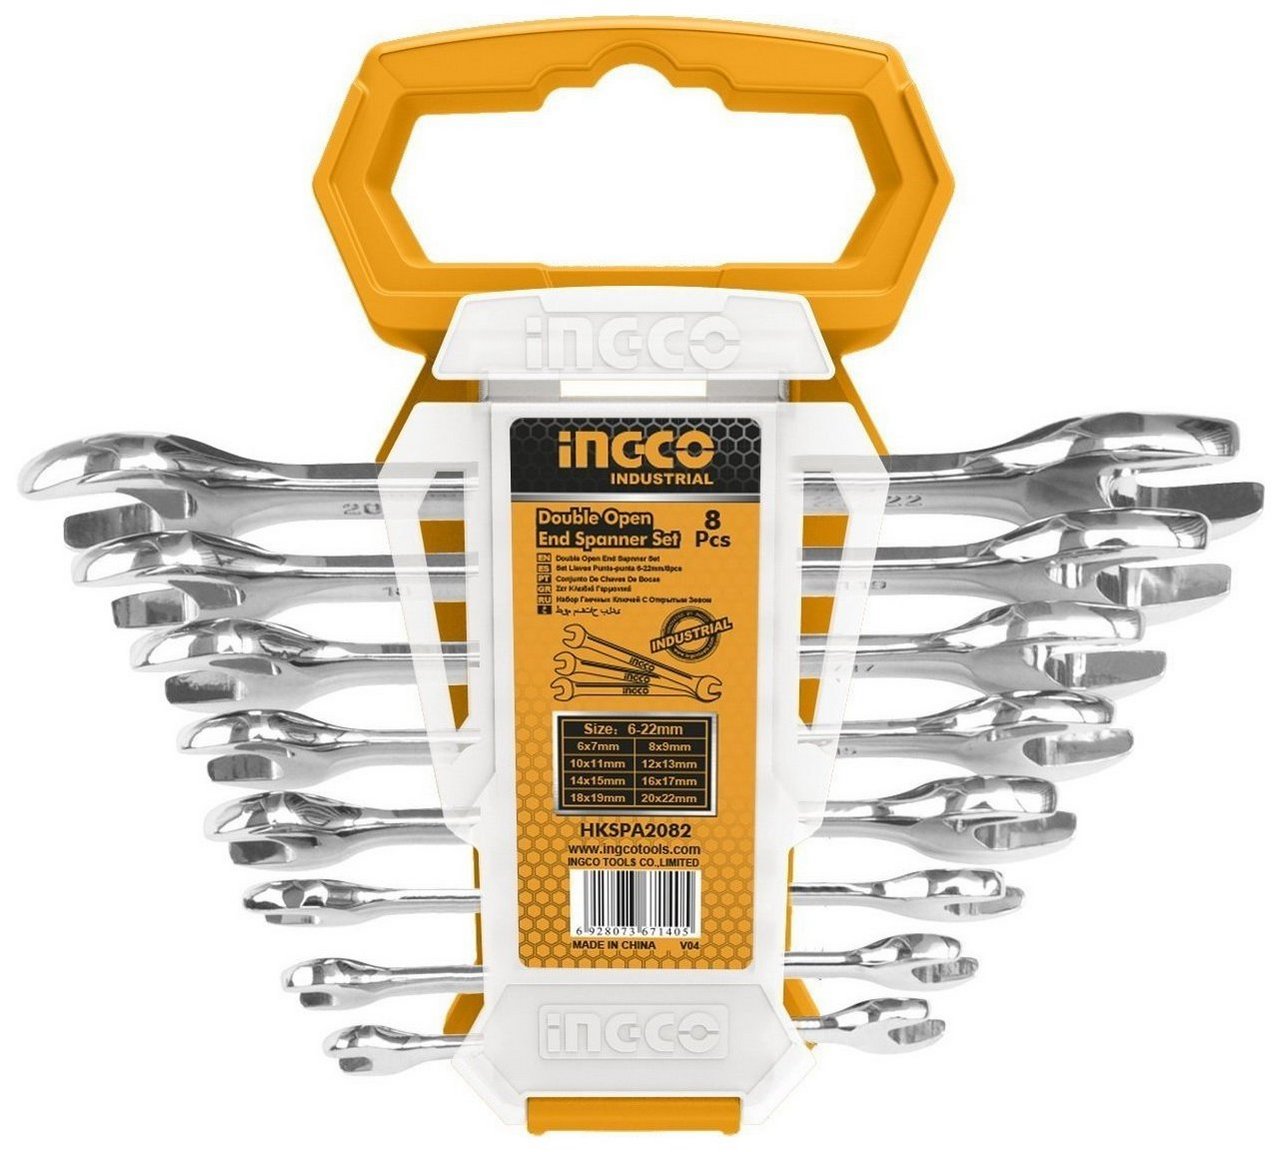 сумка для инструментов ingco htbg09 industrial 60 см Набор рожковых ключей  INGCO HKSPA2088 INDUSTRIAL